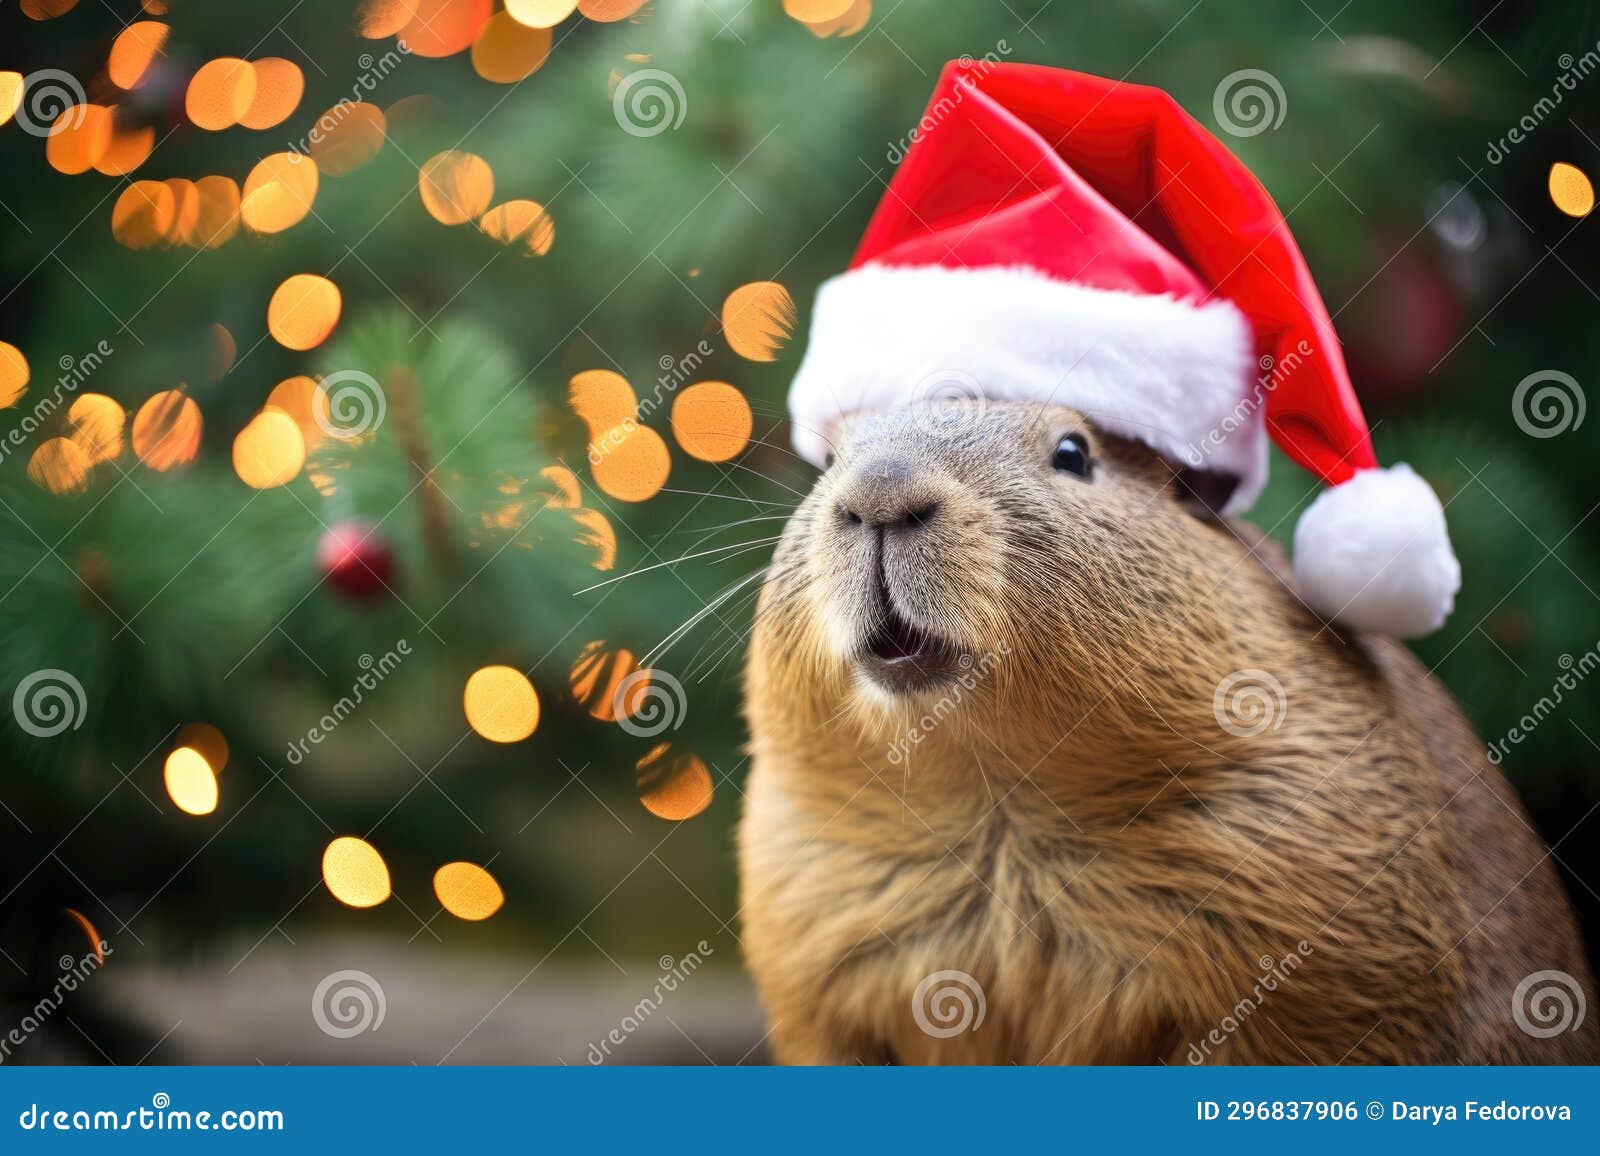 Capybara Wearing Santa Hat on Bokeh Backdrop. Stock Photo - Image of ...